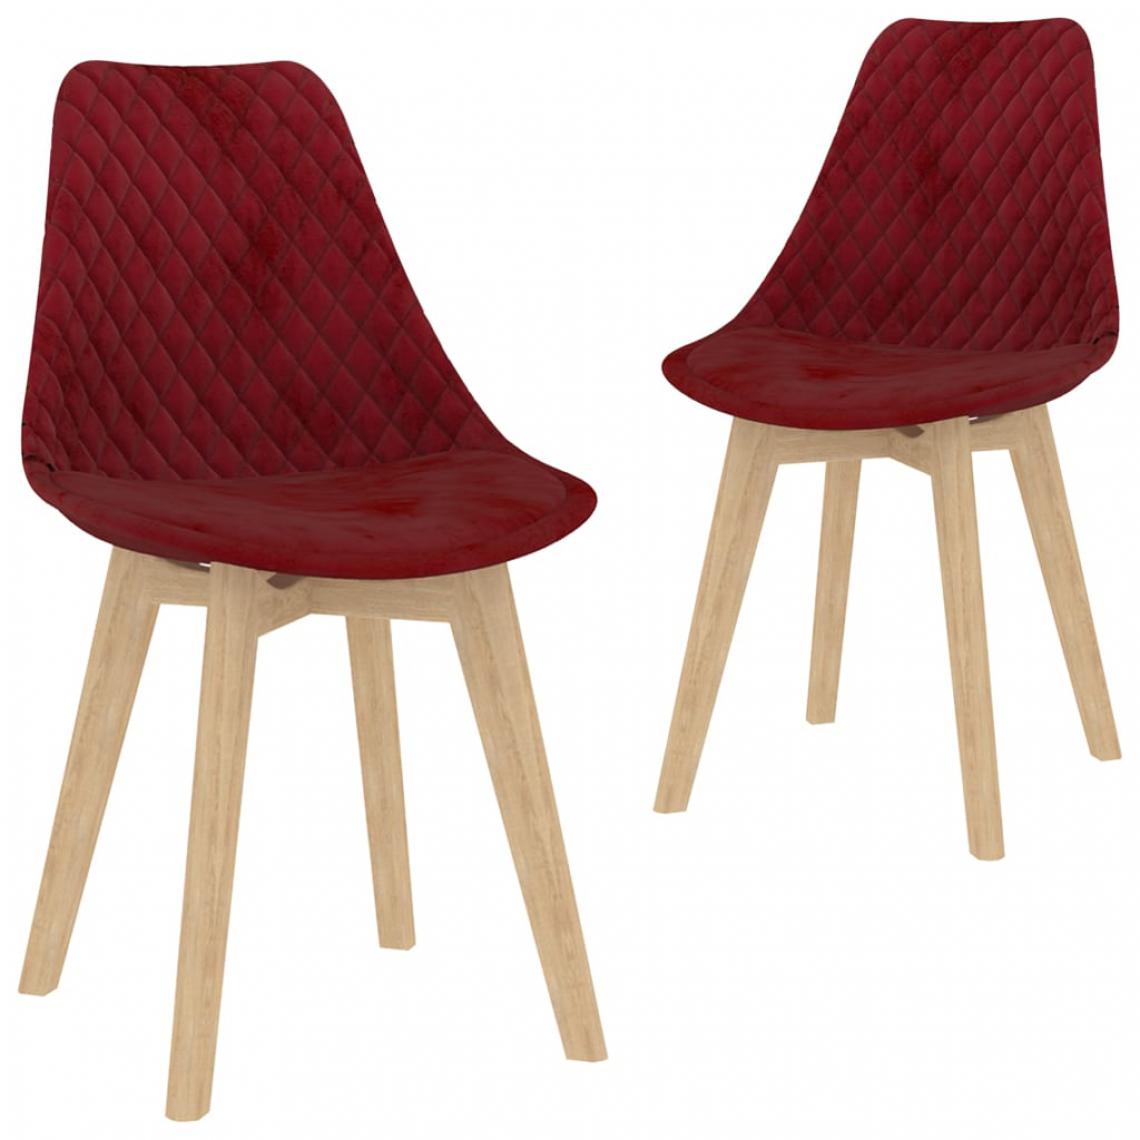 Icaverne - Splendide Fauteuils et chaises edition Ottawa Chaises de salle à manger 2 pcs Rouge bordeaux Velours - Chaises